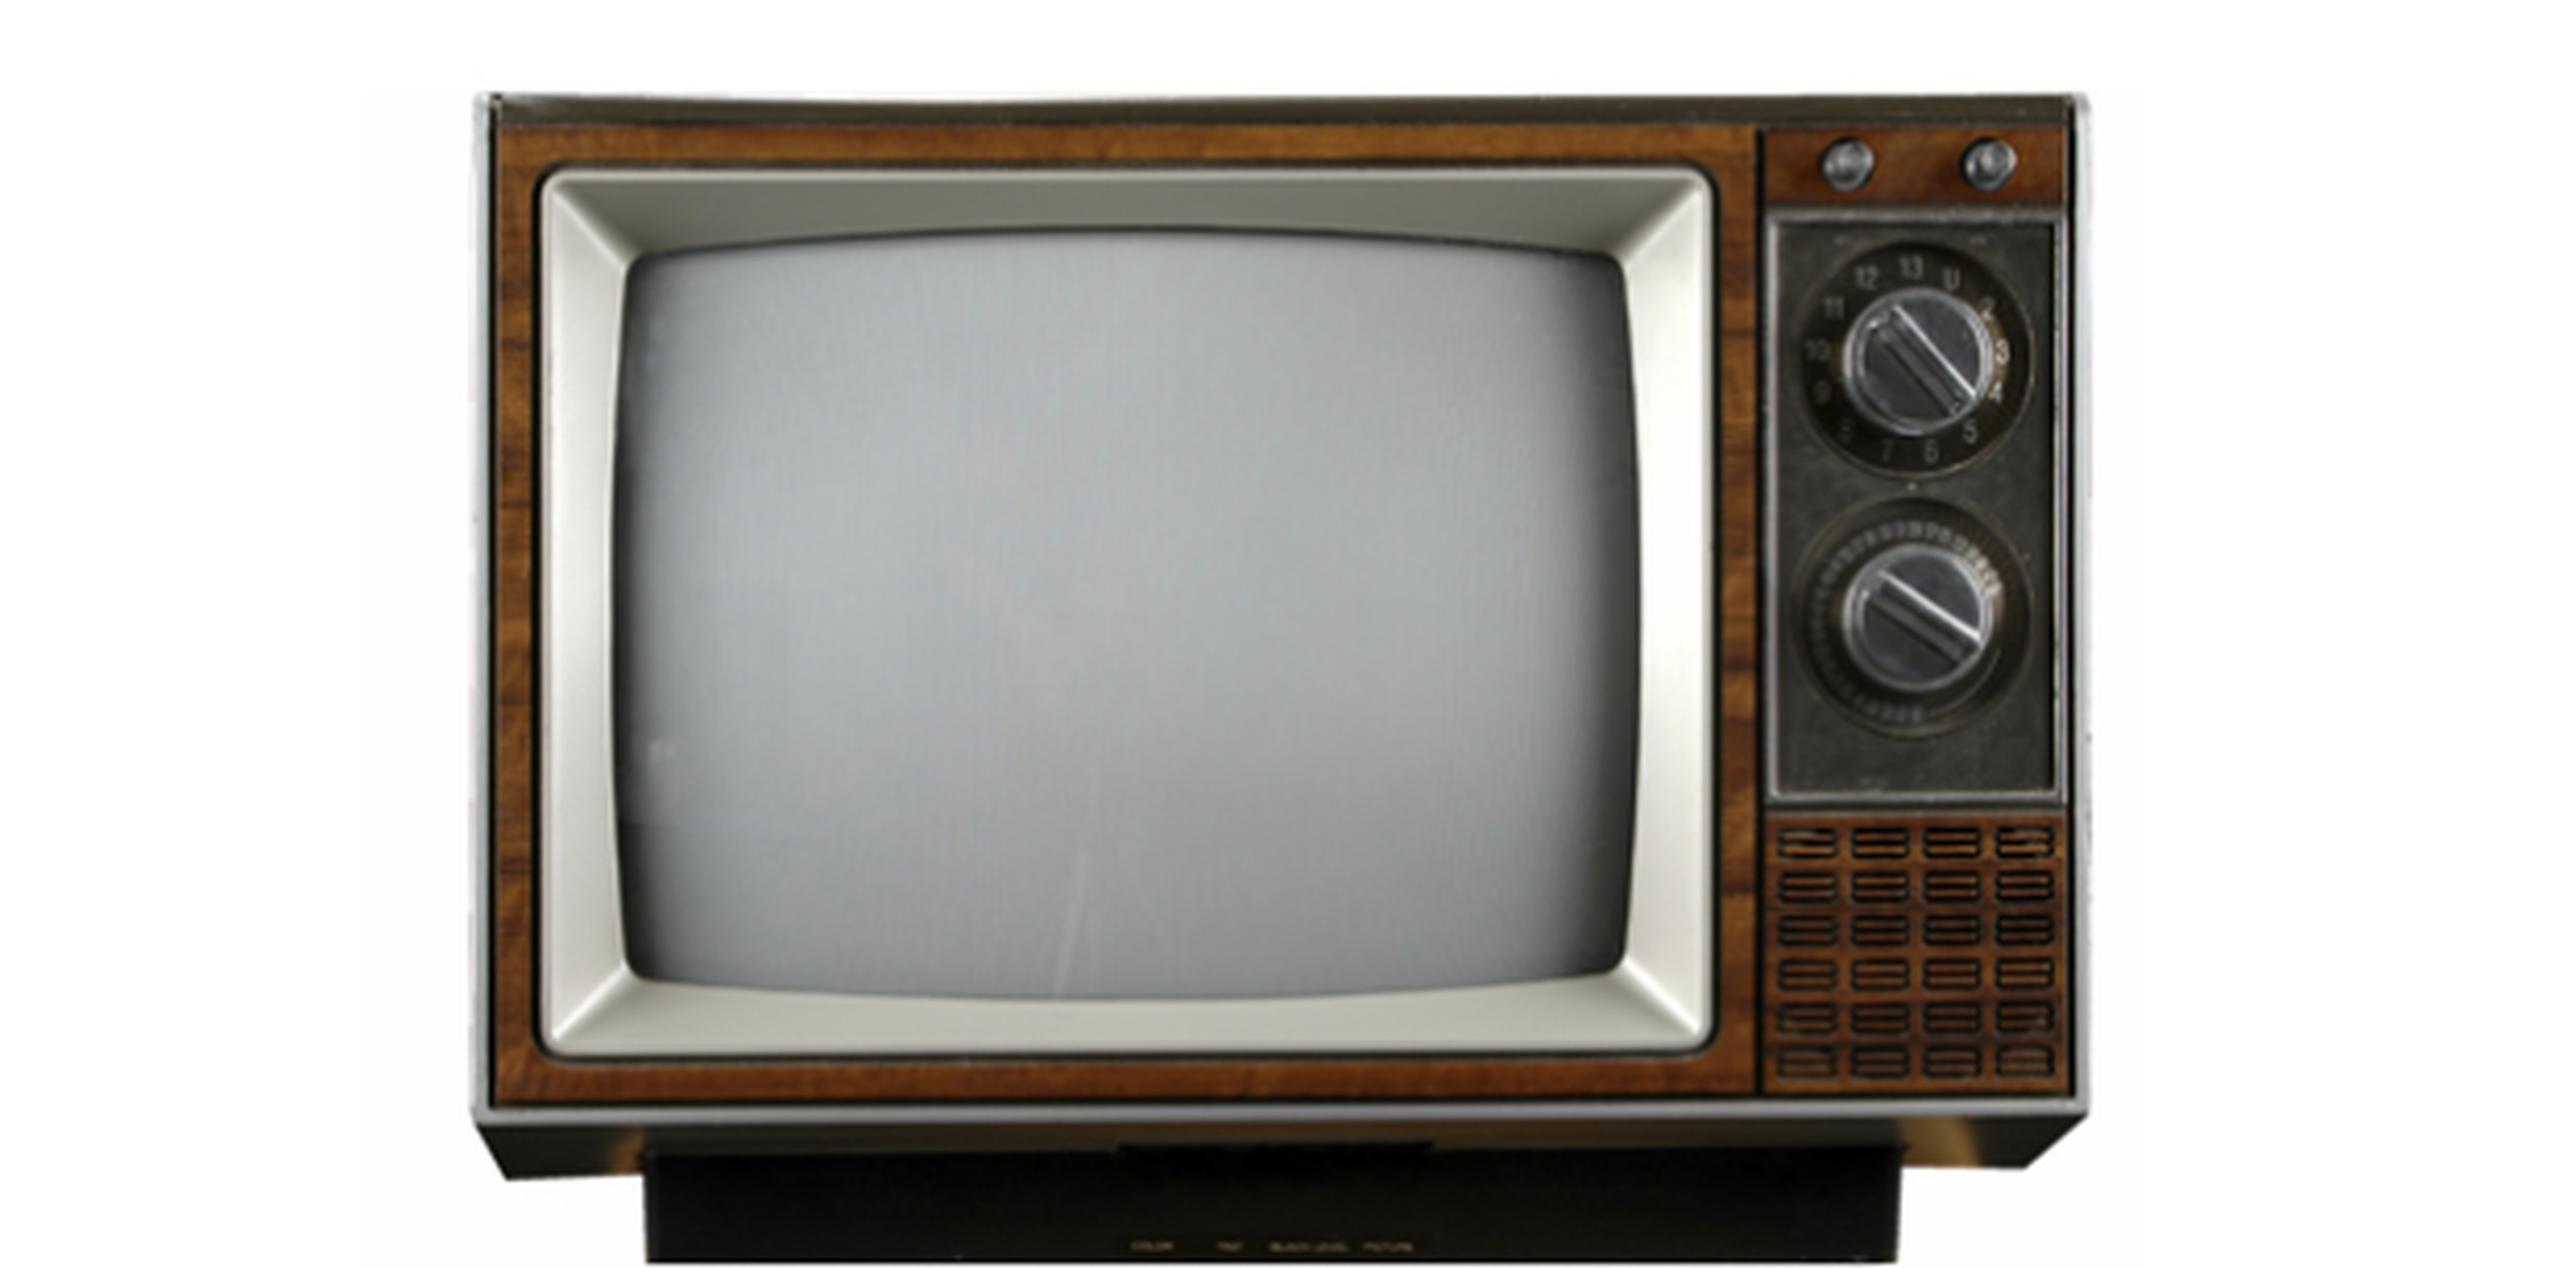 Iannacone hurtó un televisor del Centro Judío de Norwalk. (Archivo)